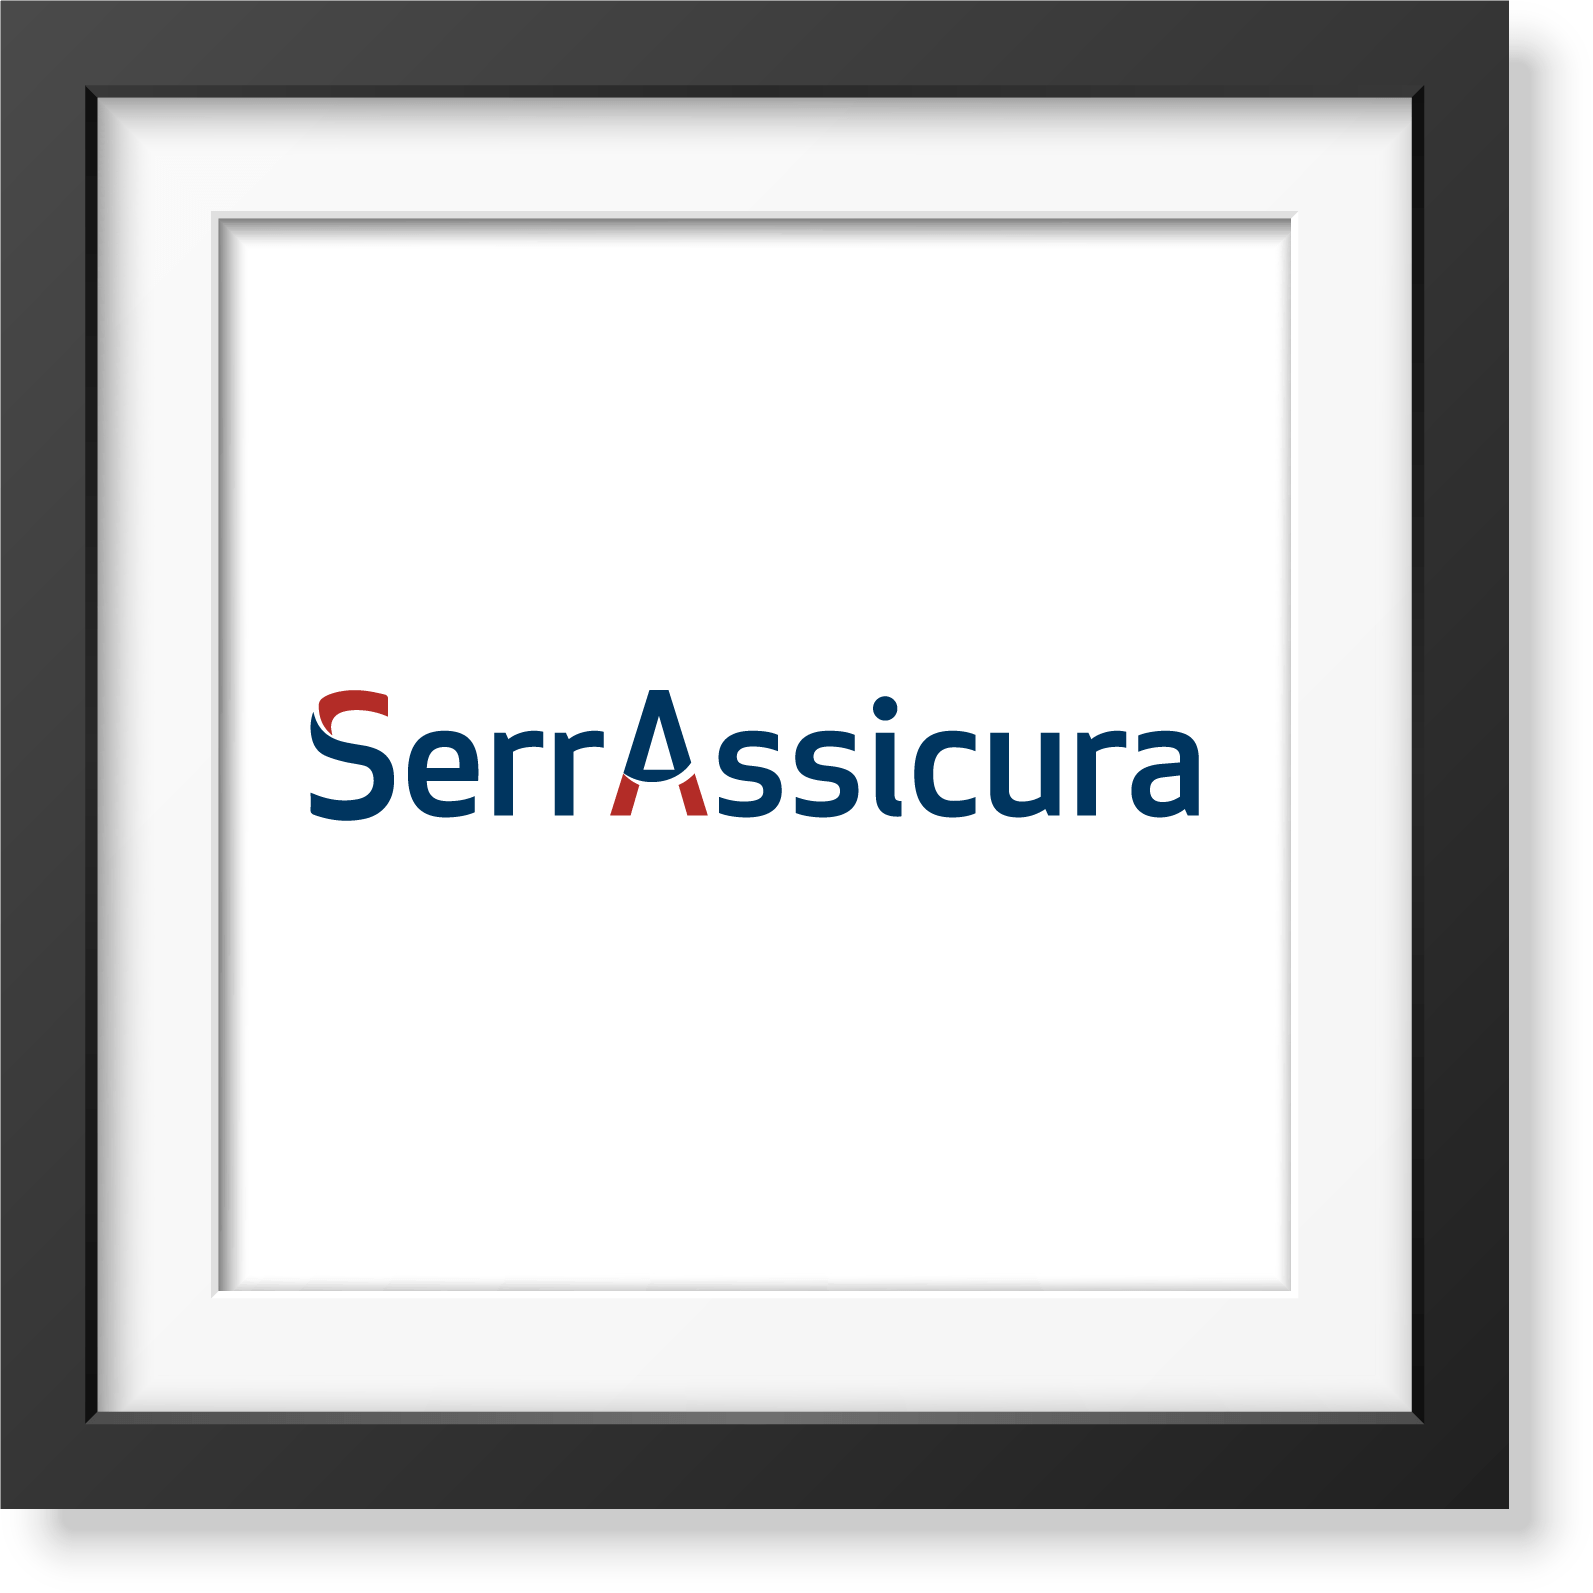 SerrAssicura - studio e realizzazione logo